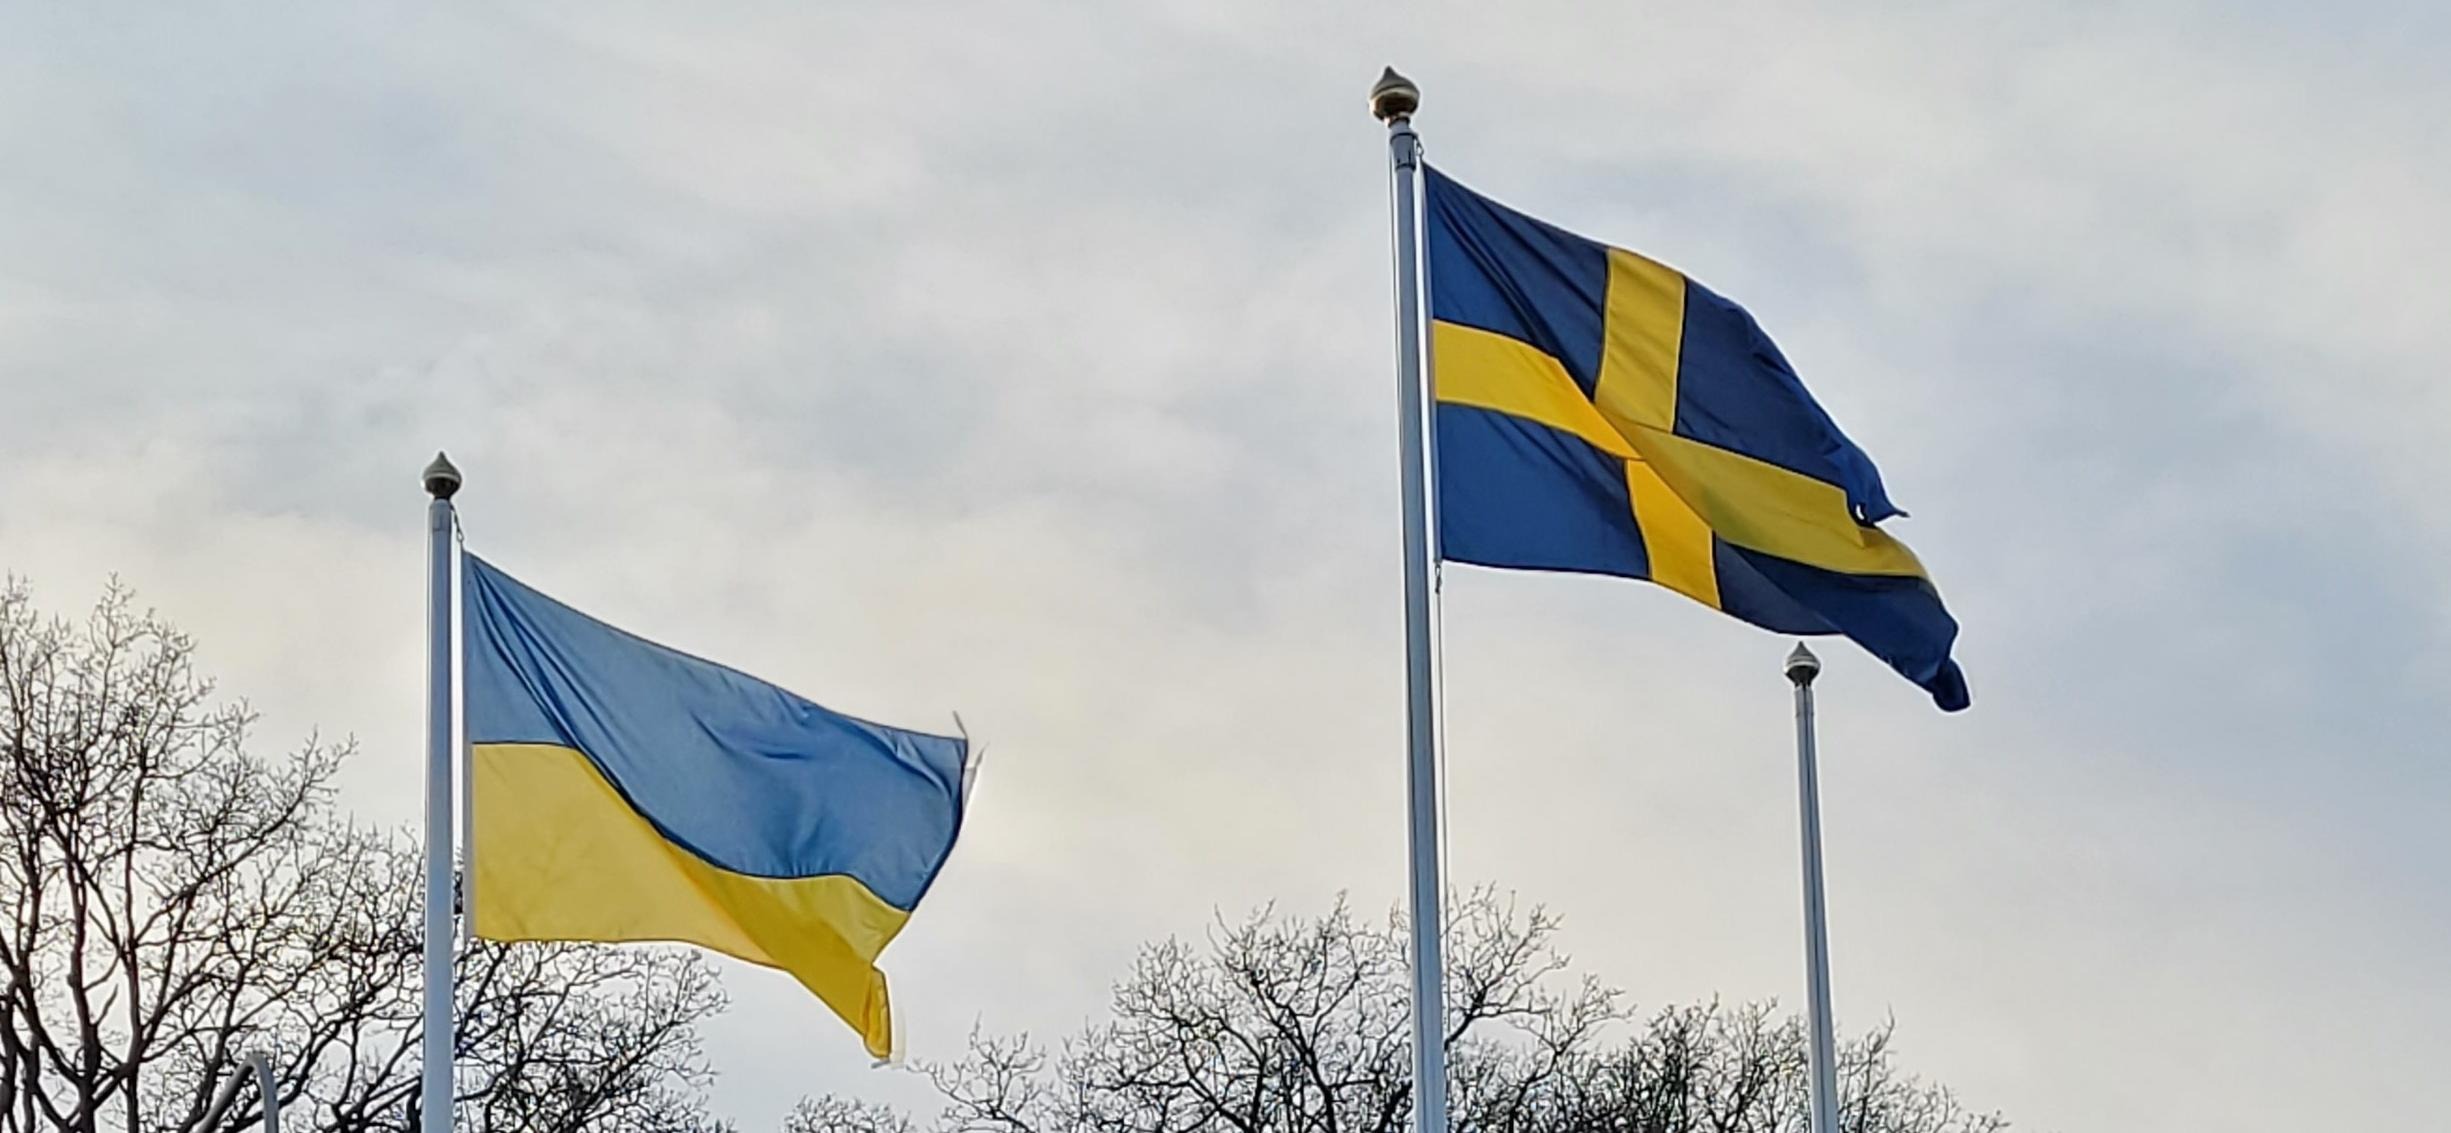 ukrainsk och svensk flagga mot himmel